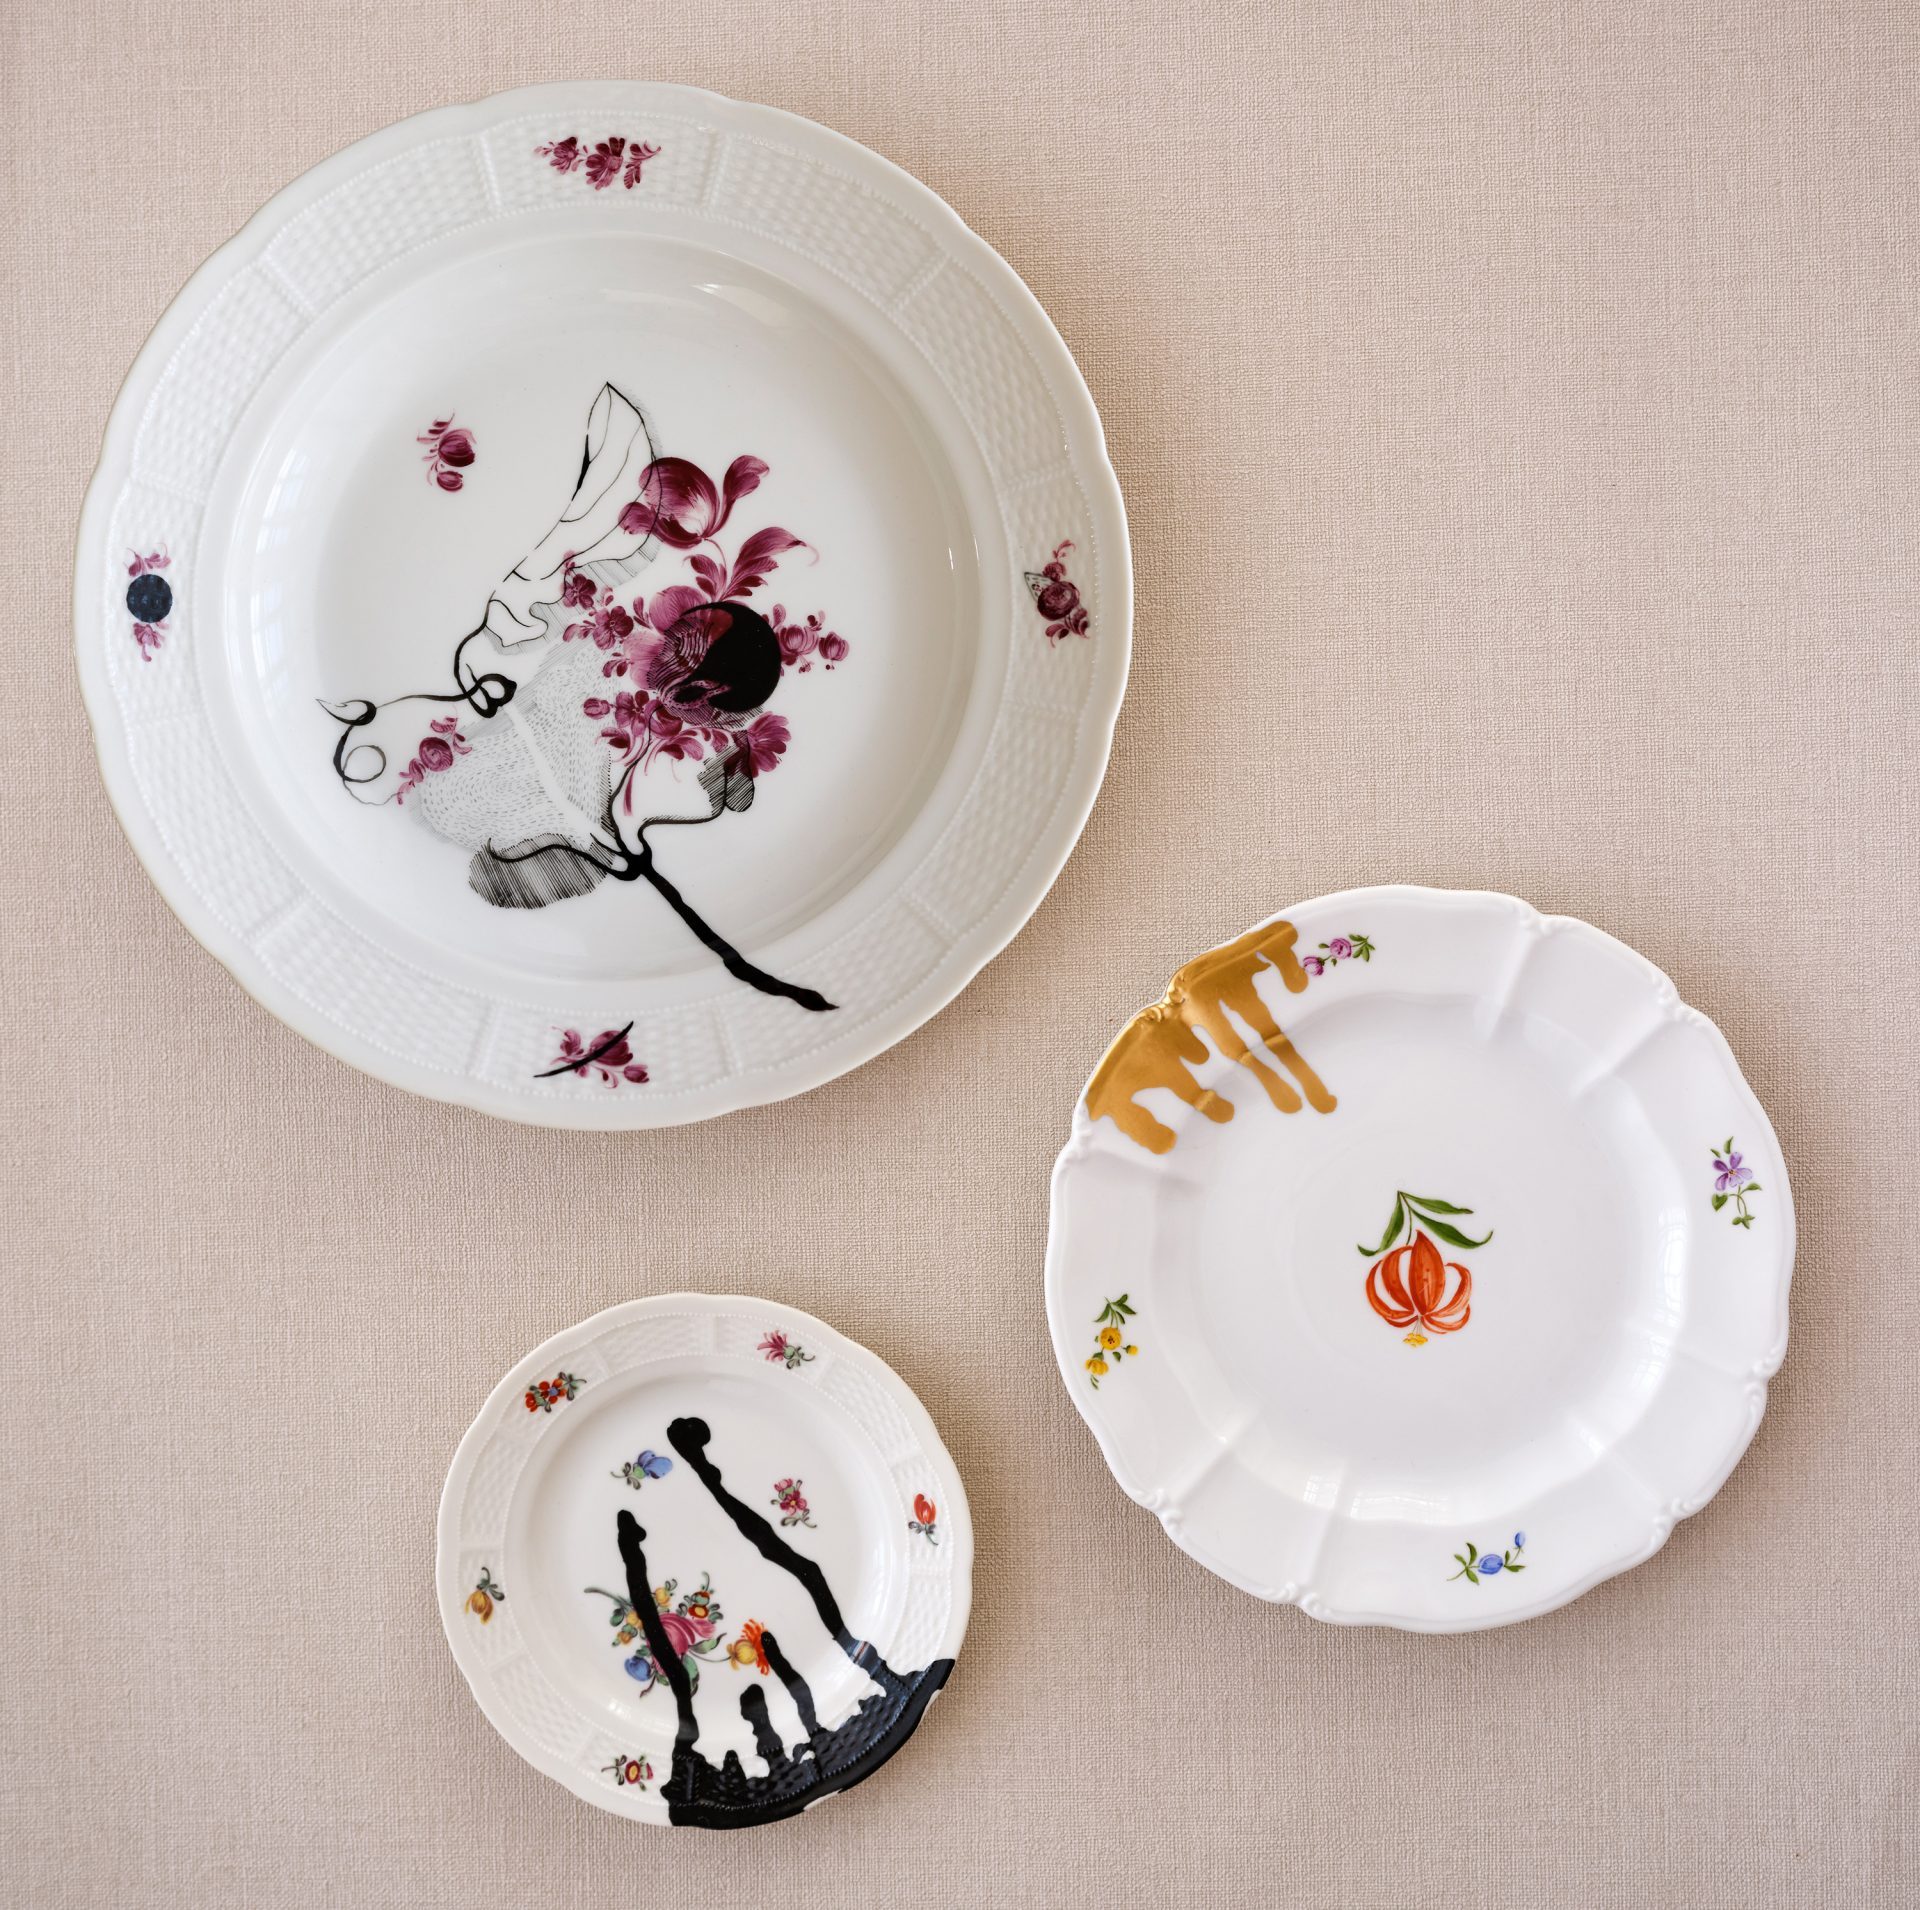 Drei unterschiedlich große Teller mit Blumendekoren, darüber gemaltes zweites Dekor